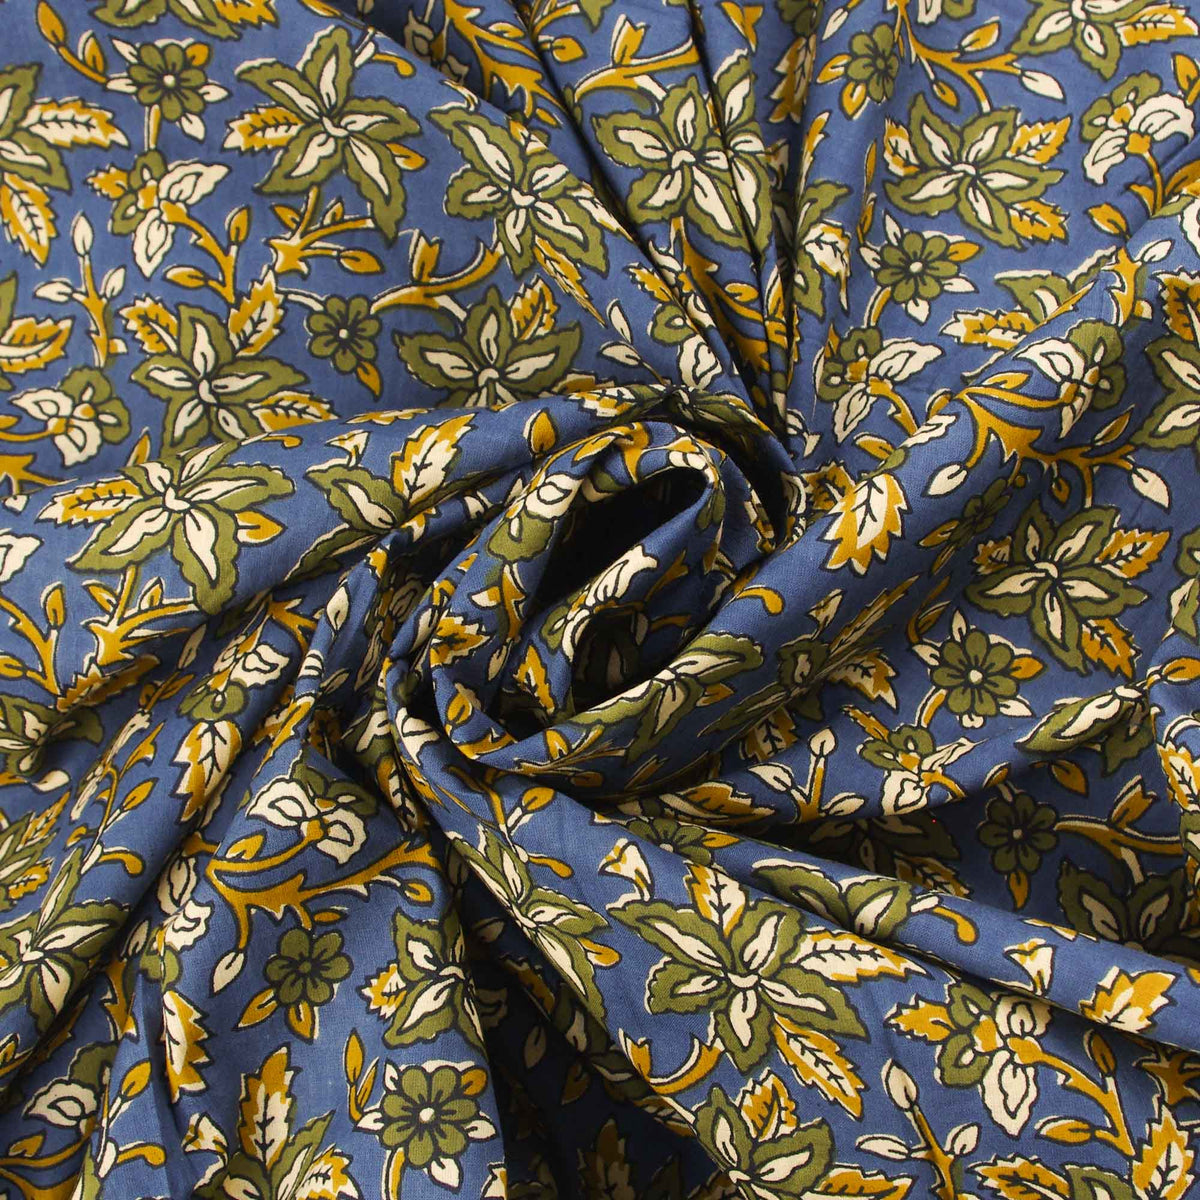 Handsiebdruck aus 100 % Baumwolle – Heena-Blumen auf Graublau (Design 383)